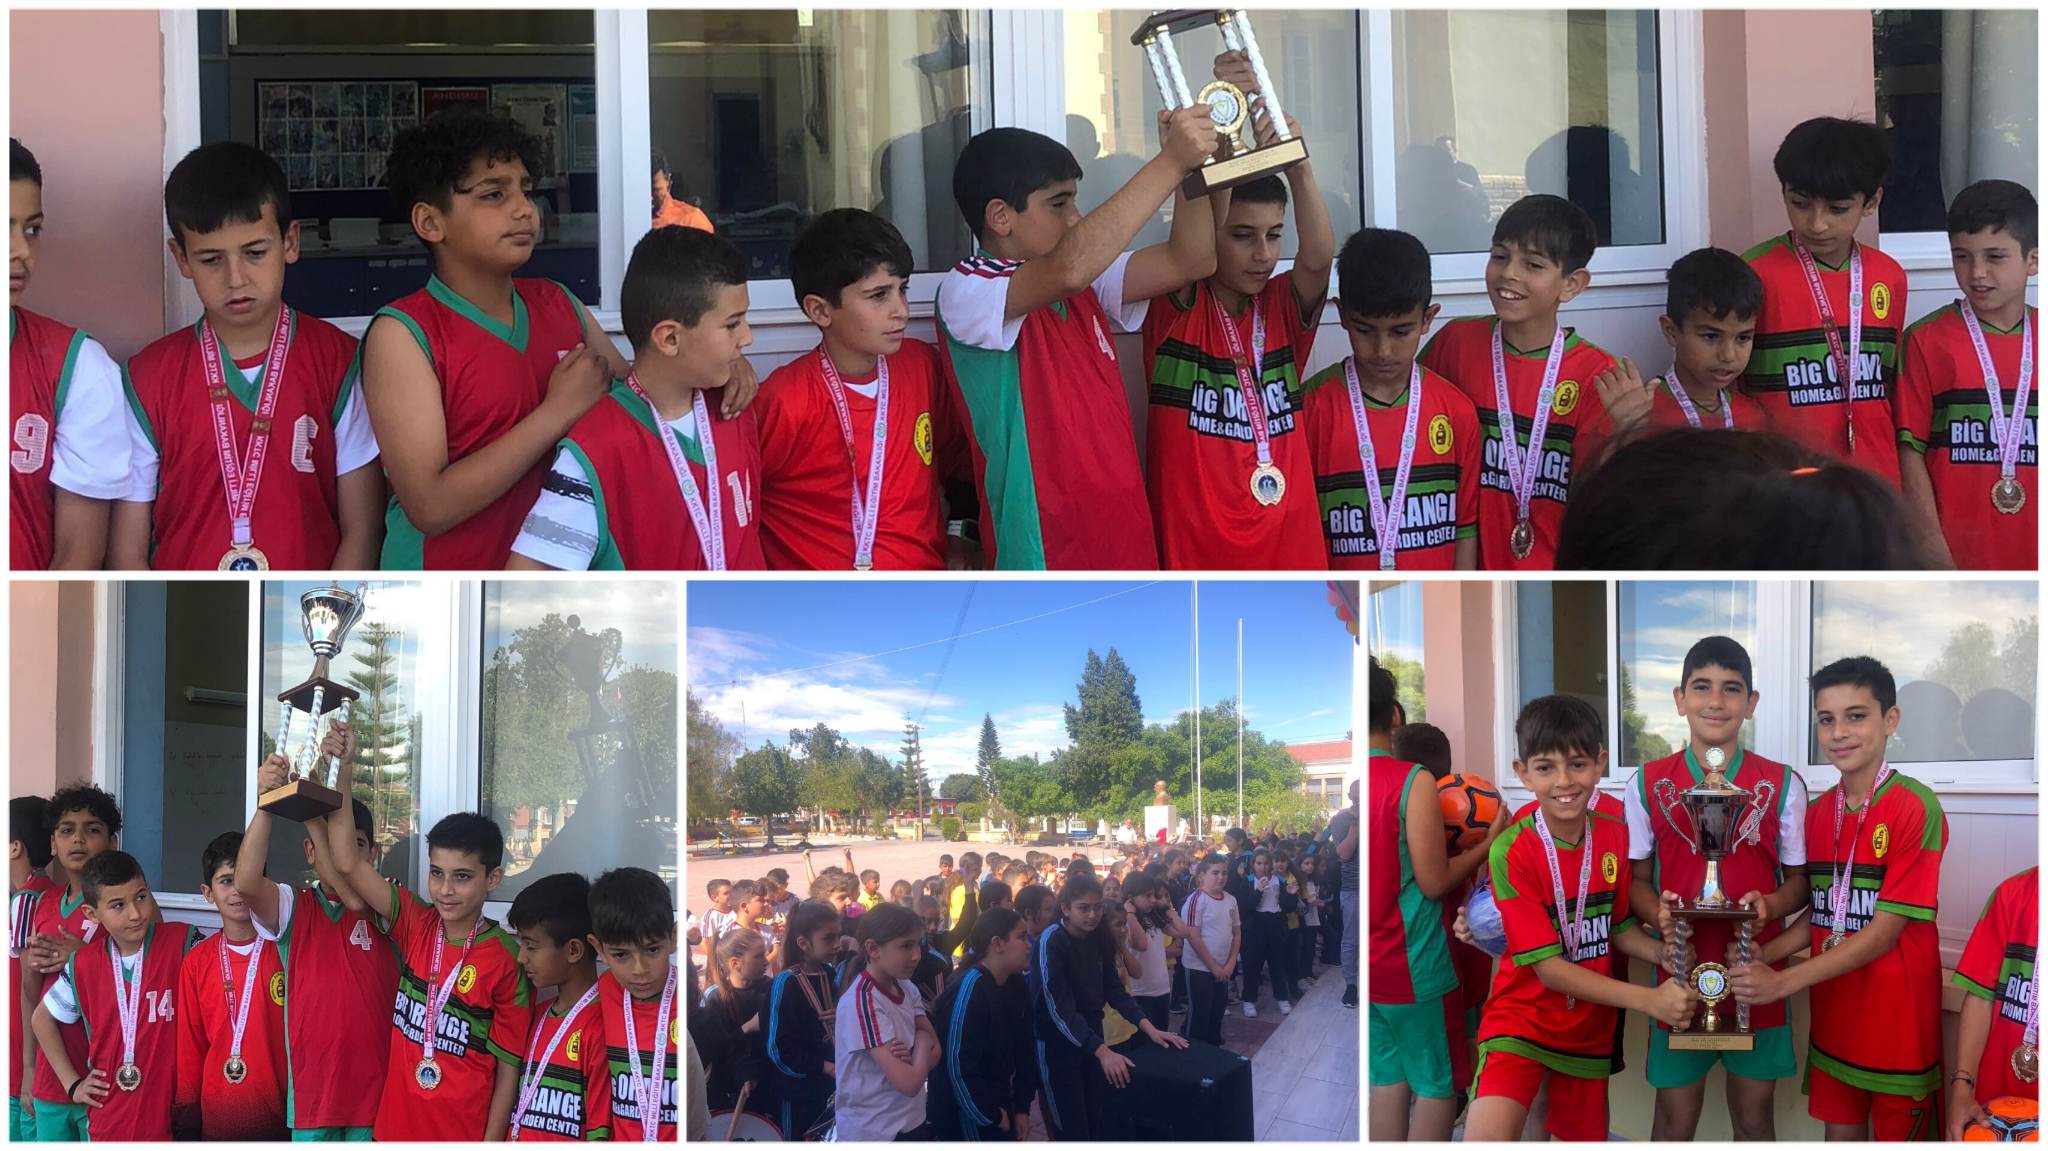 İlkokullar arası futbol birinciliğinde Güzelyurt Özgürlük İlkokulu KKTC şampiyonu oldu